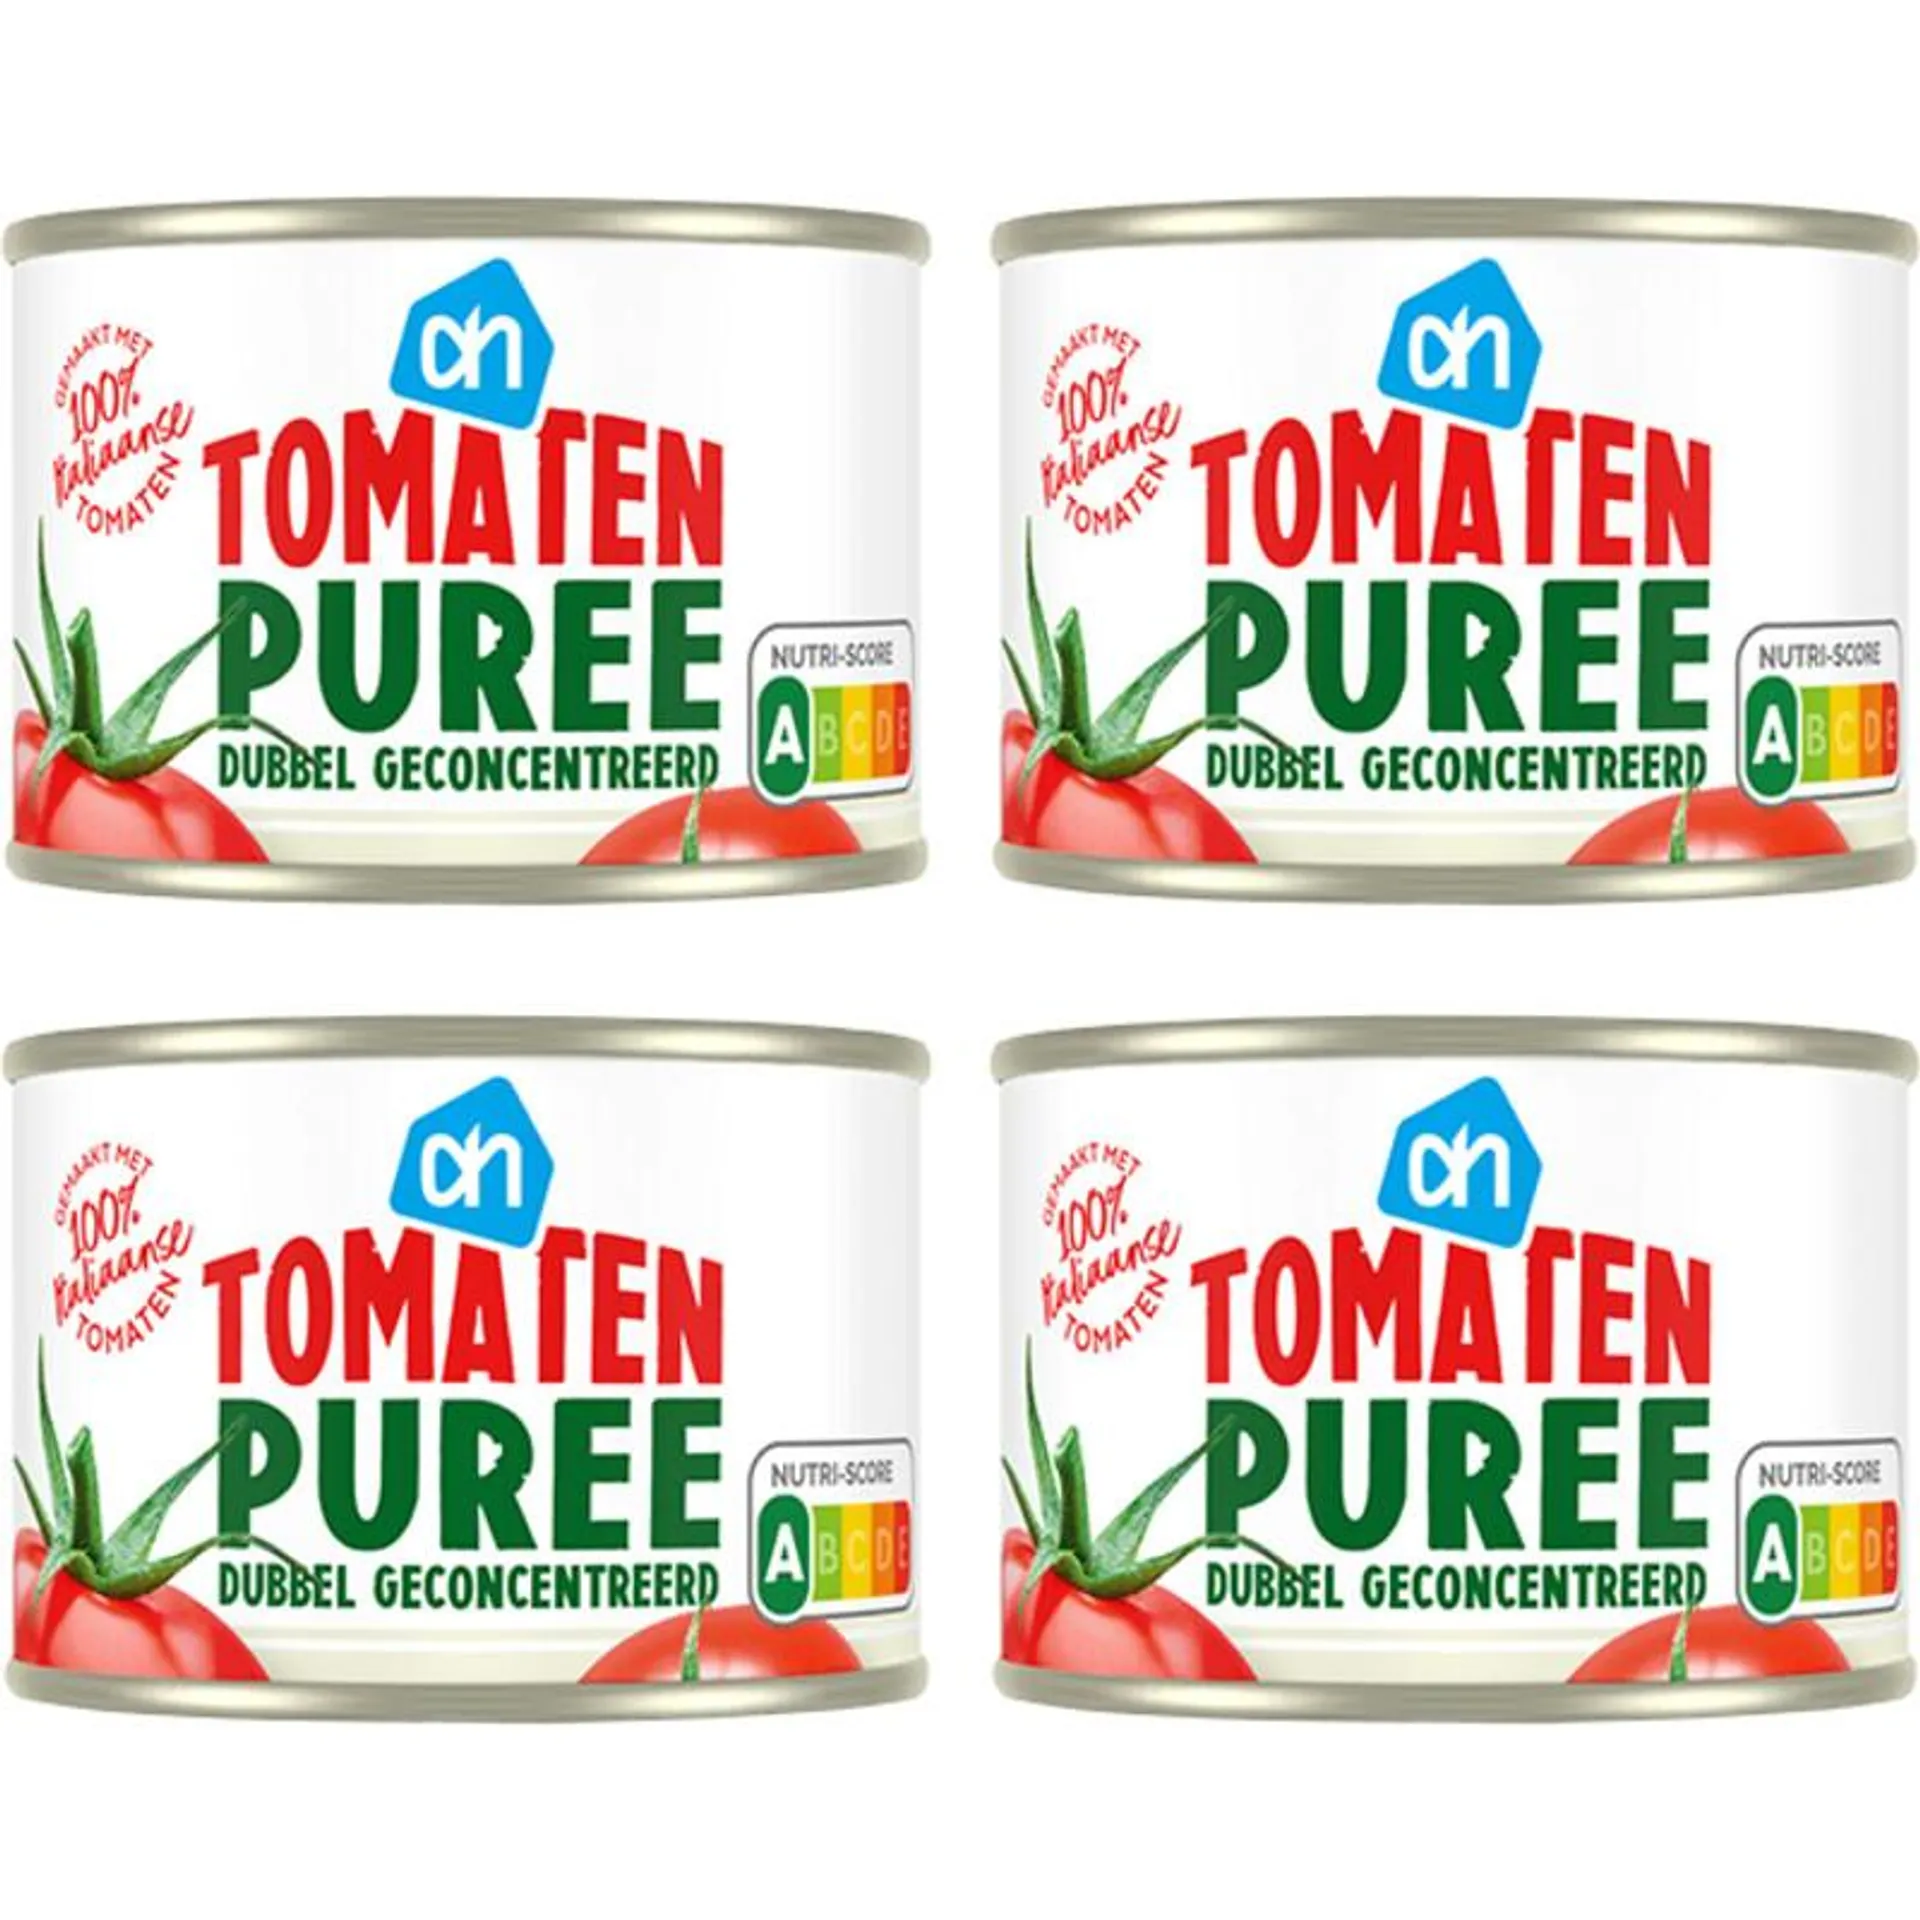 AH Tomatenpuree 4-pack